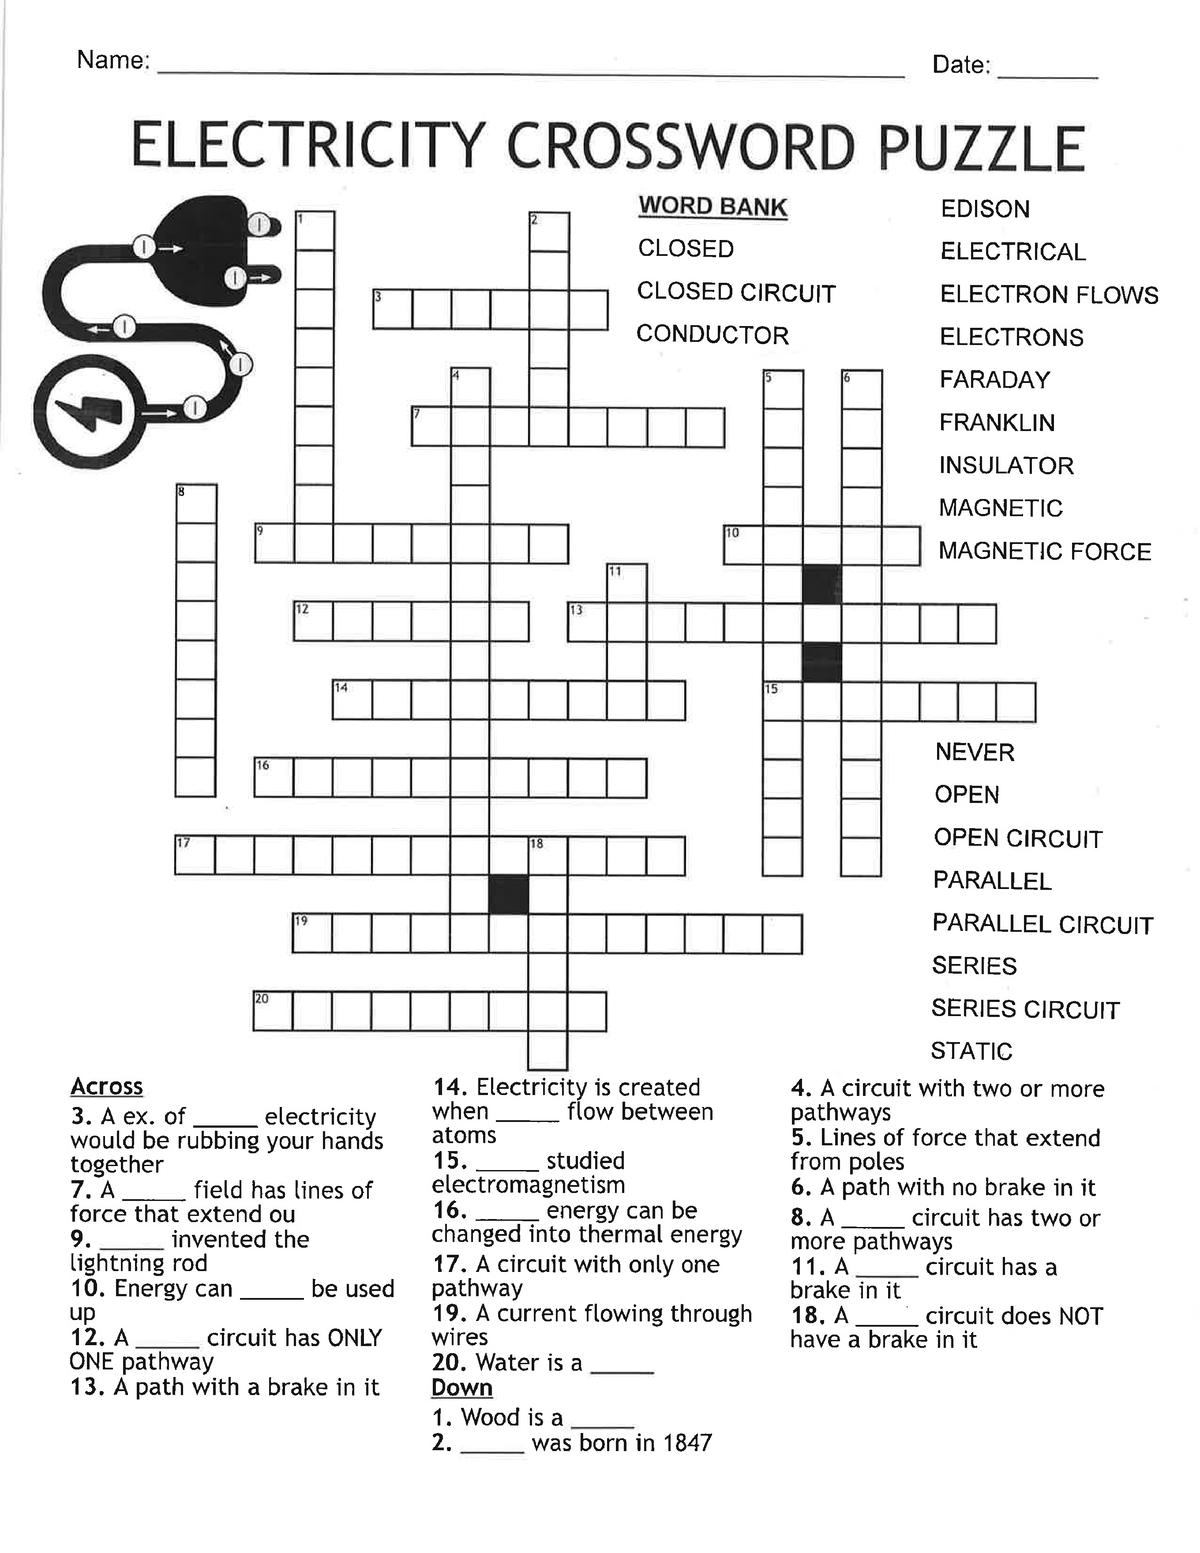 Electricity Crossword Puzzle Studocu